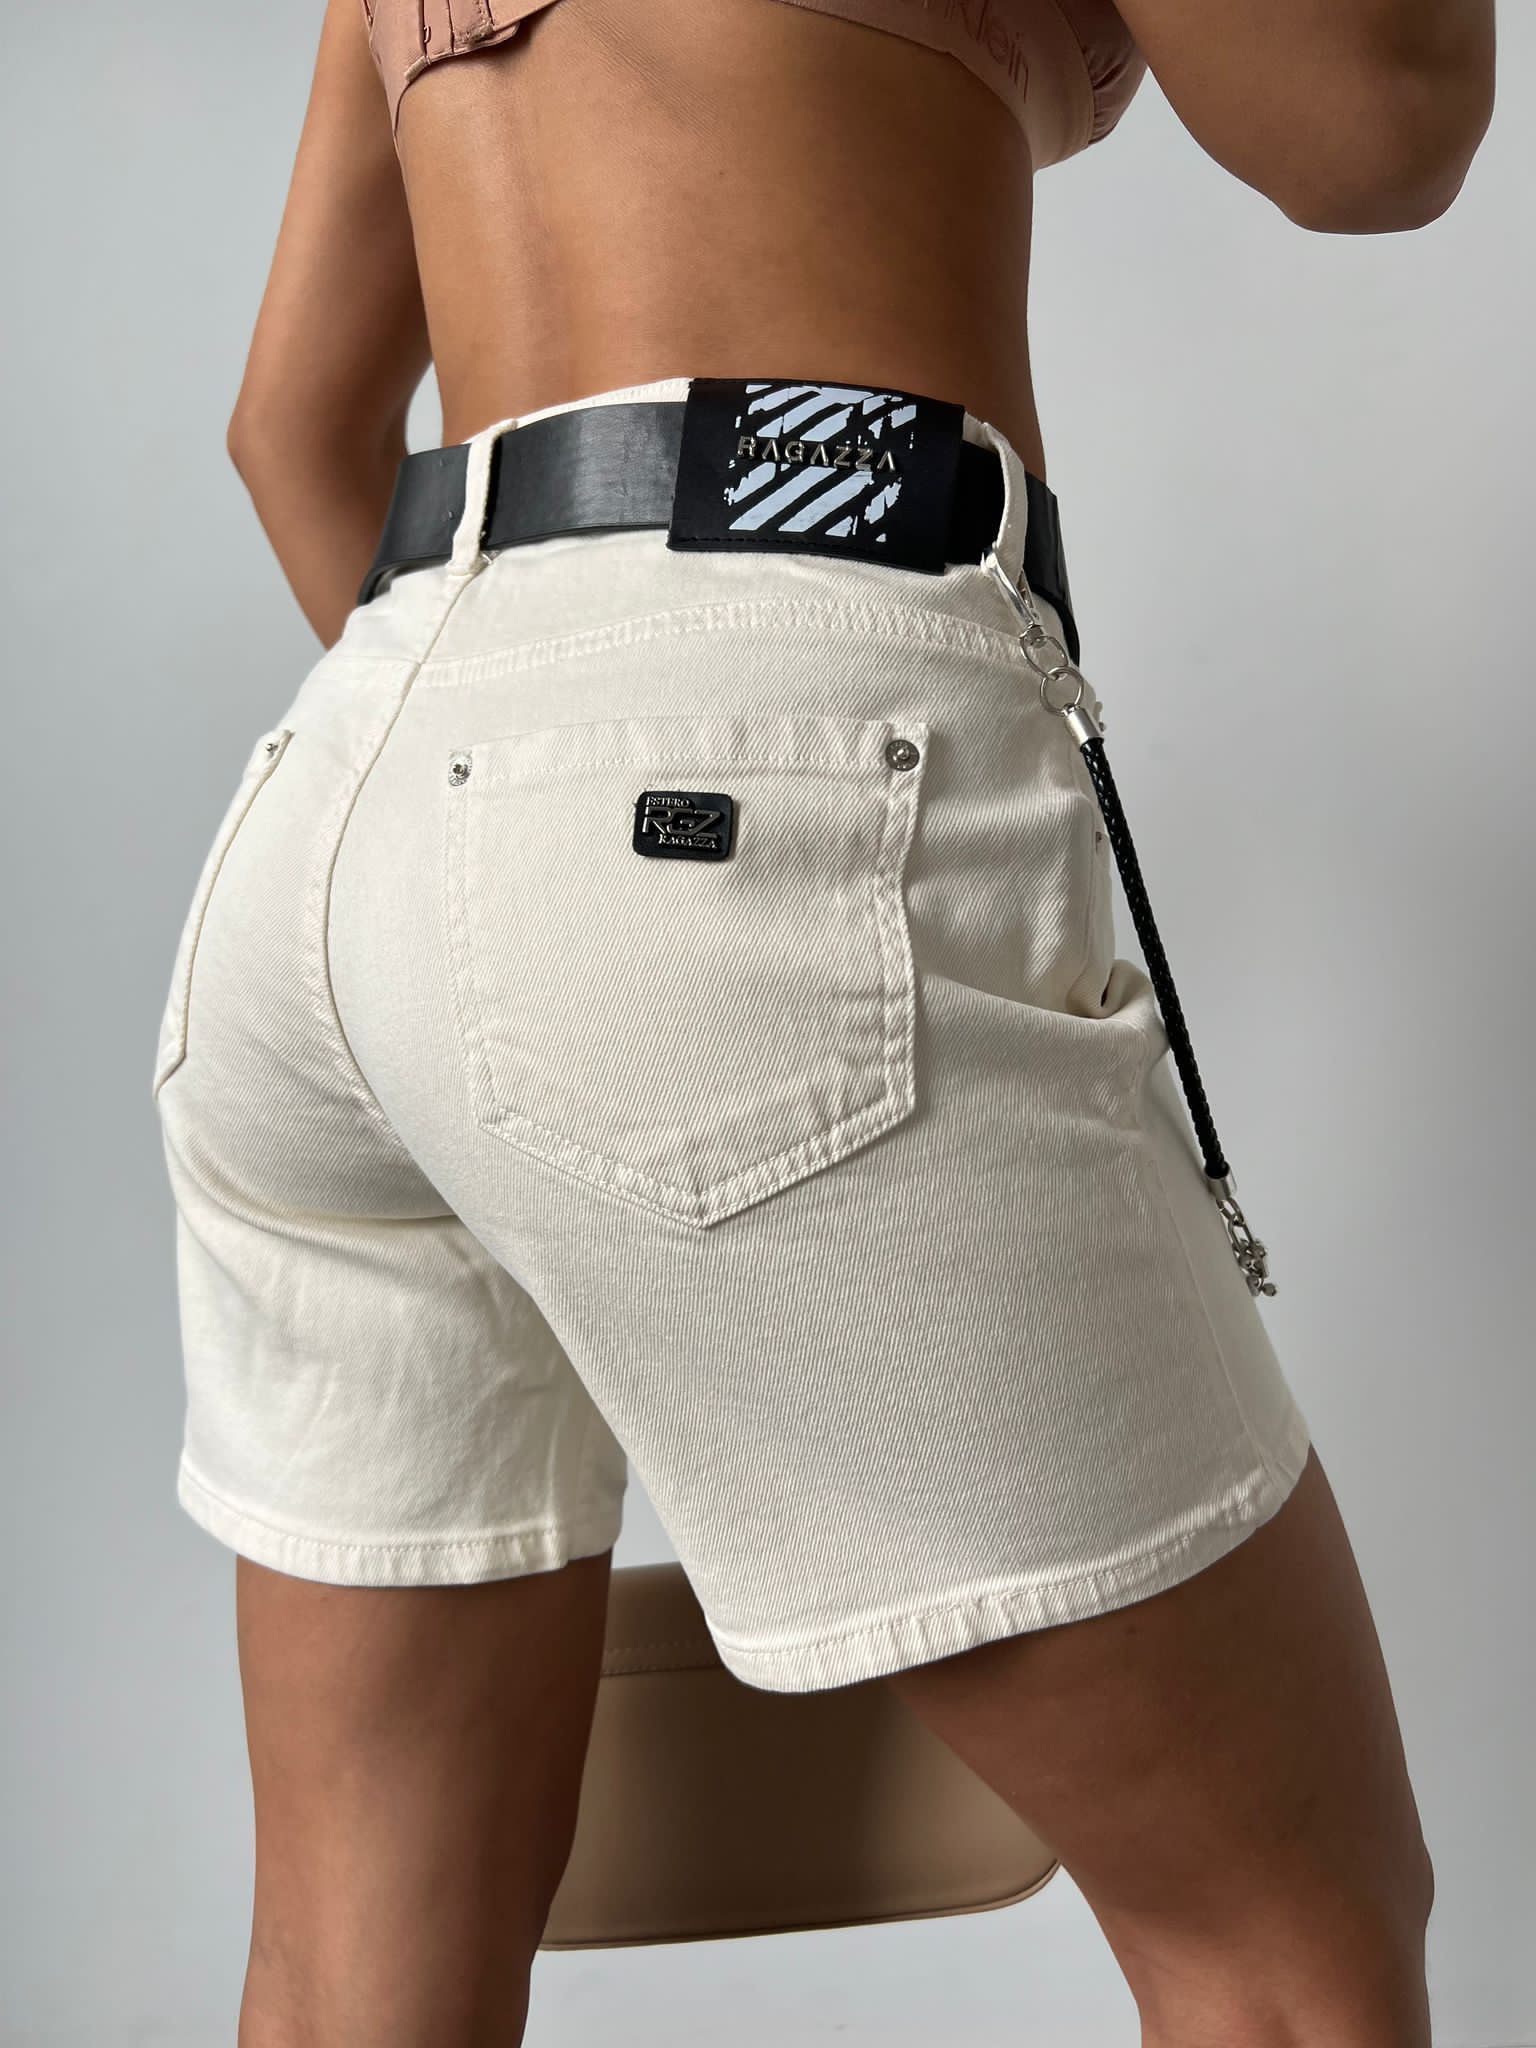 Дамски панталони LINA  https://bvseductive.com/products/дамски-панталони-lina  къси панталонки с колан в цвят екрю в широка кройка с висока талия можете да кобминирате с топ или тениска чудесно допълнение към Вашата визия